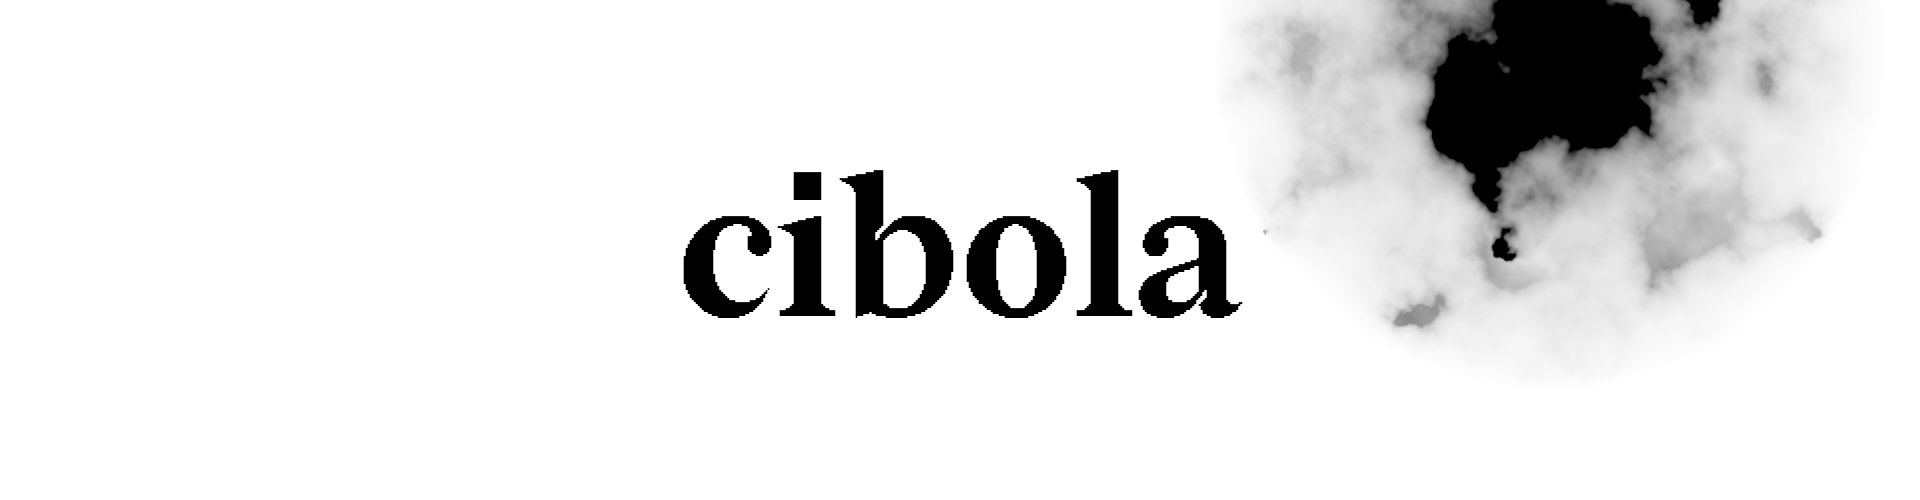 Cibola